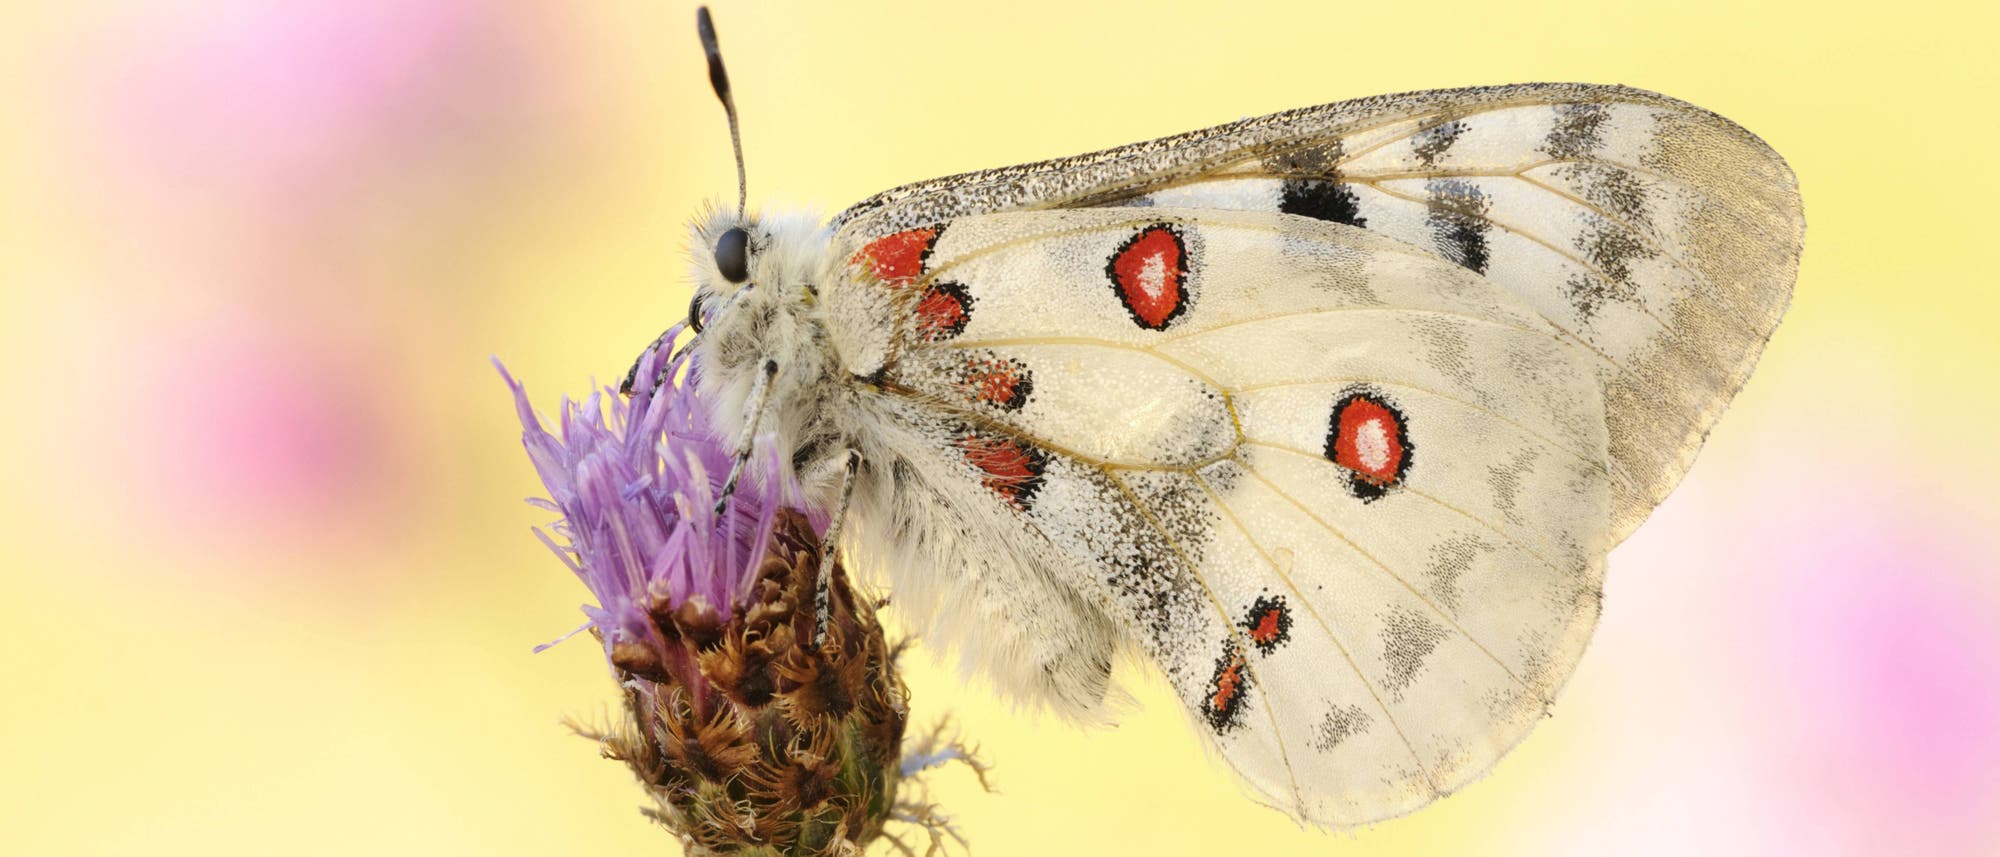 Ein Mosel-Apollofalter sitzt auf der violetten Blüte einer Pflanze. Der Falter ist weiß mit schwarzen Flecken und roten Augenflecken. Die Flügel sind zusammengefaltet und der Falter ist von der Seite zu sehen. Der Hintergrund ist verschwommen gelb und pink.